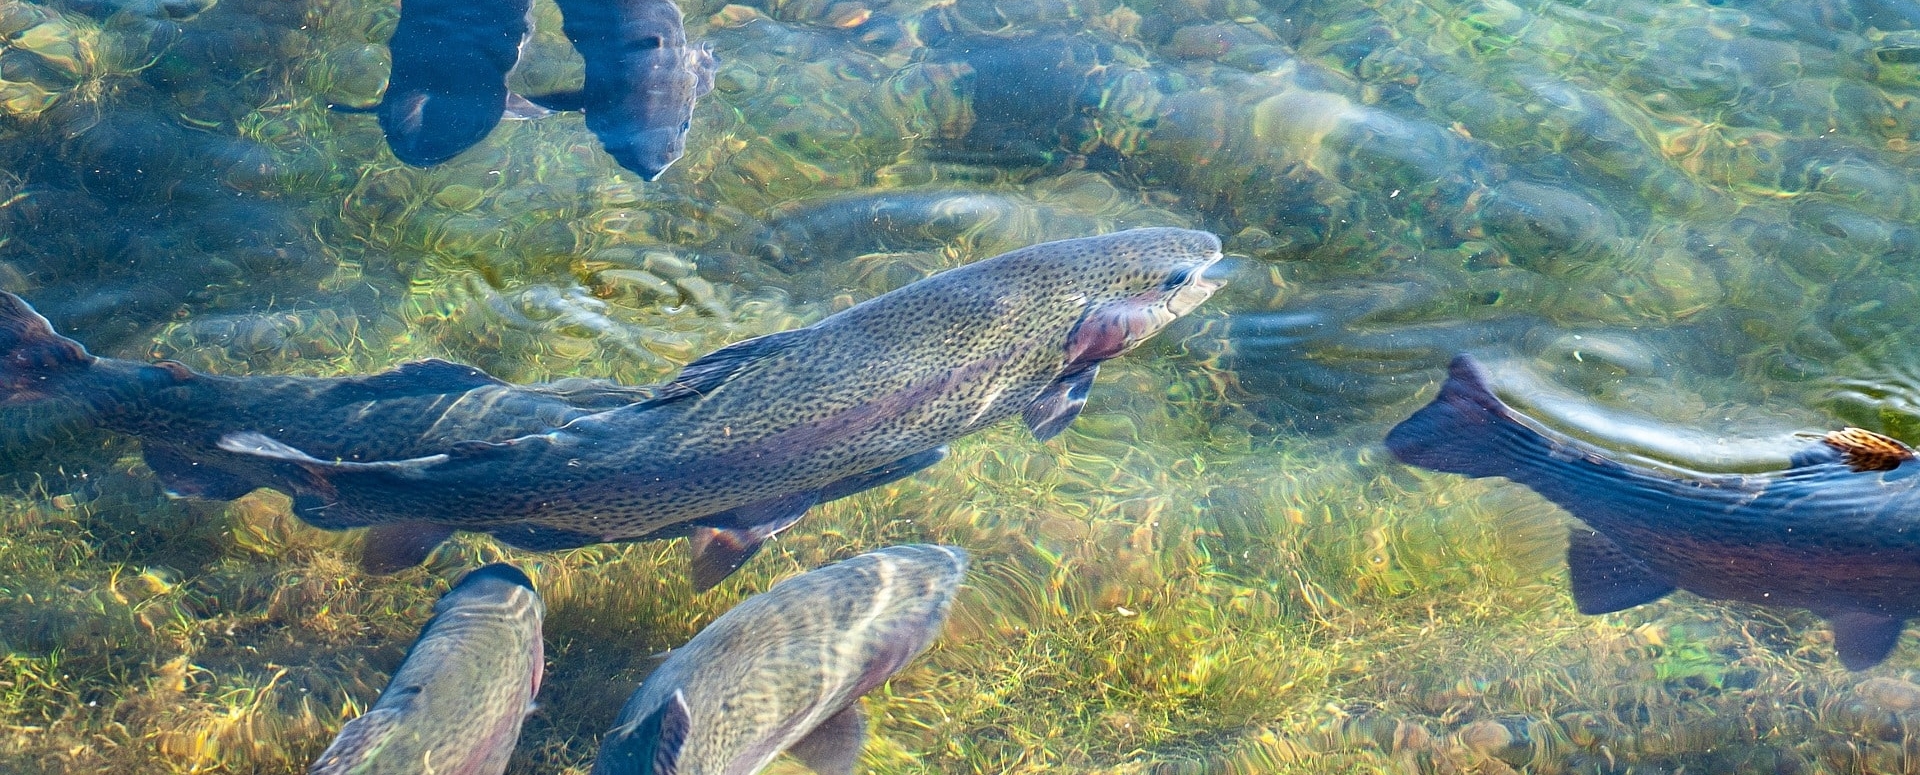 Das Bild zeigt mehrere Forellen im Wasser